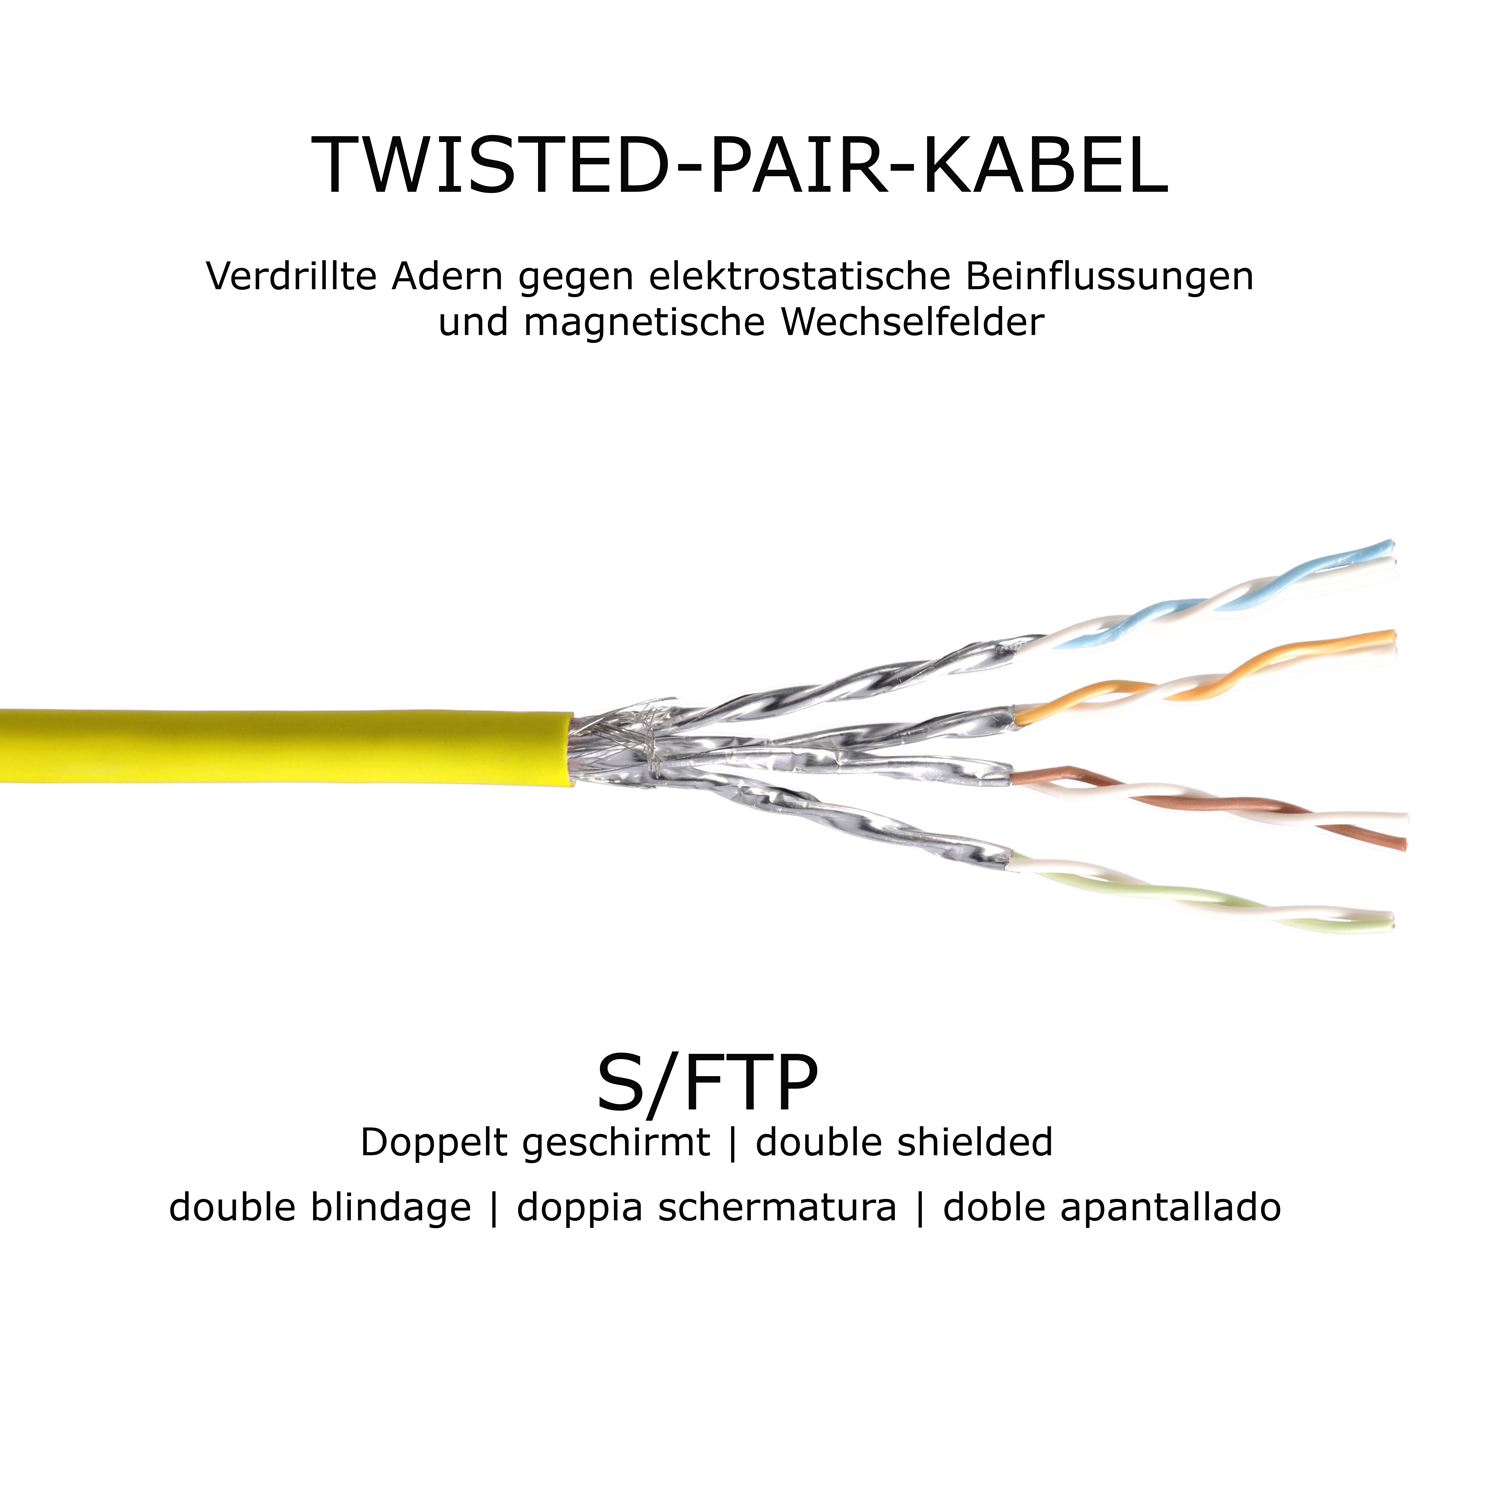 TPFNET 2m Patchkabel / Netzwerkkabel gelb, 2 Netzwerkkabel, S/FTP 10GBit, m